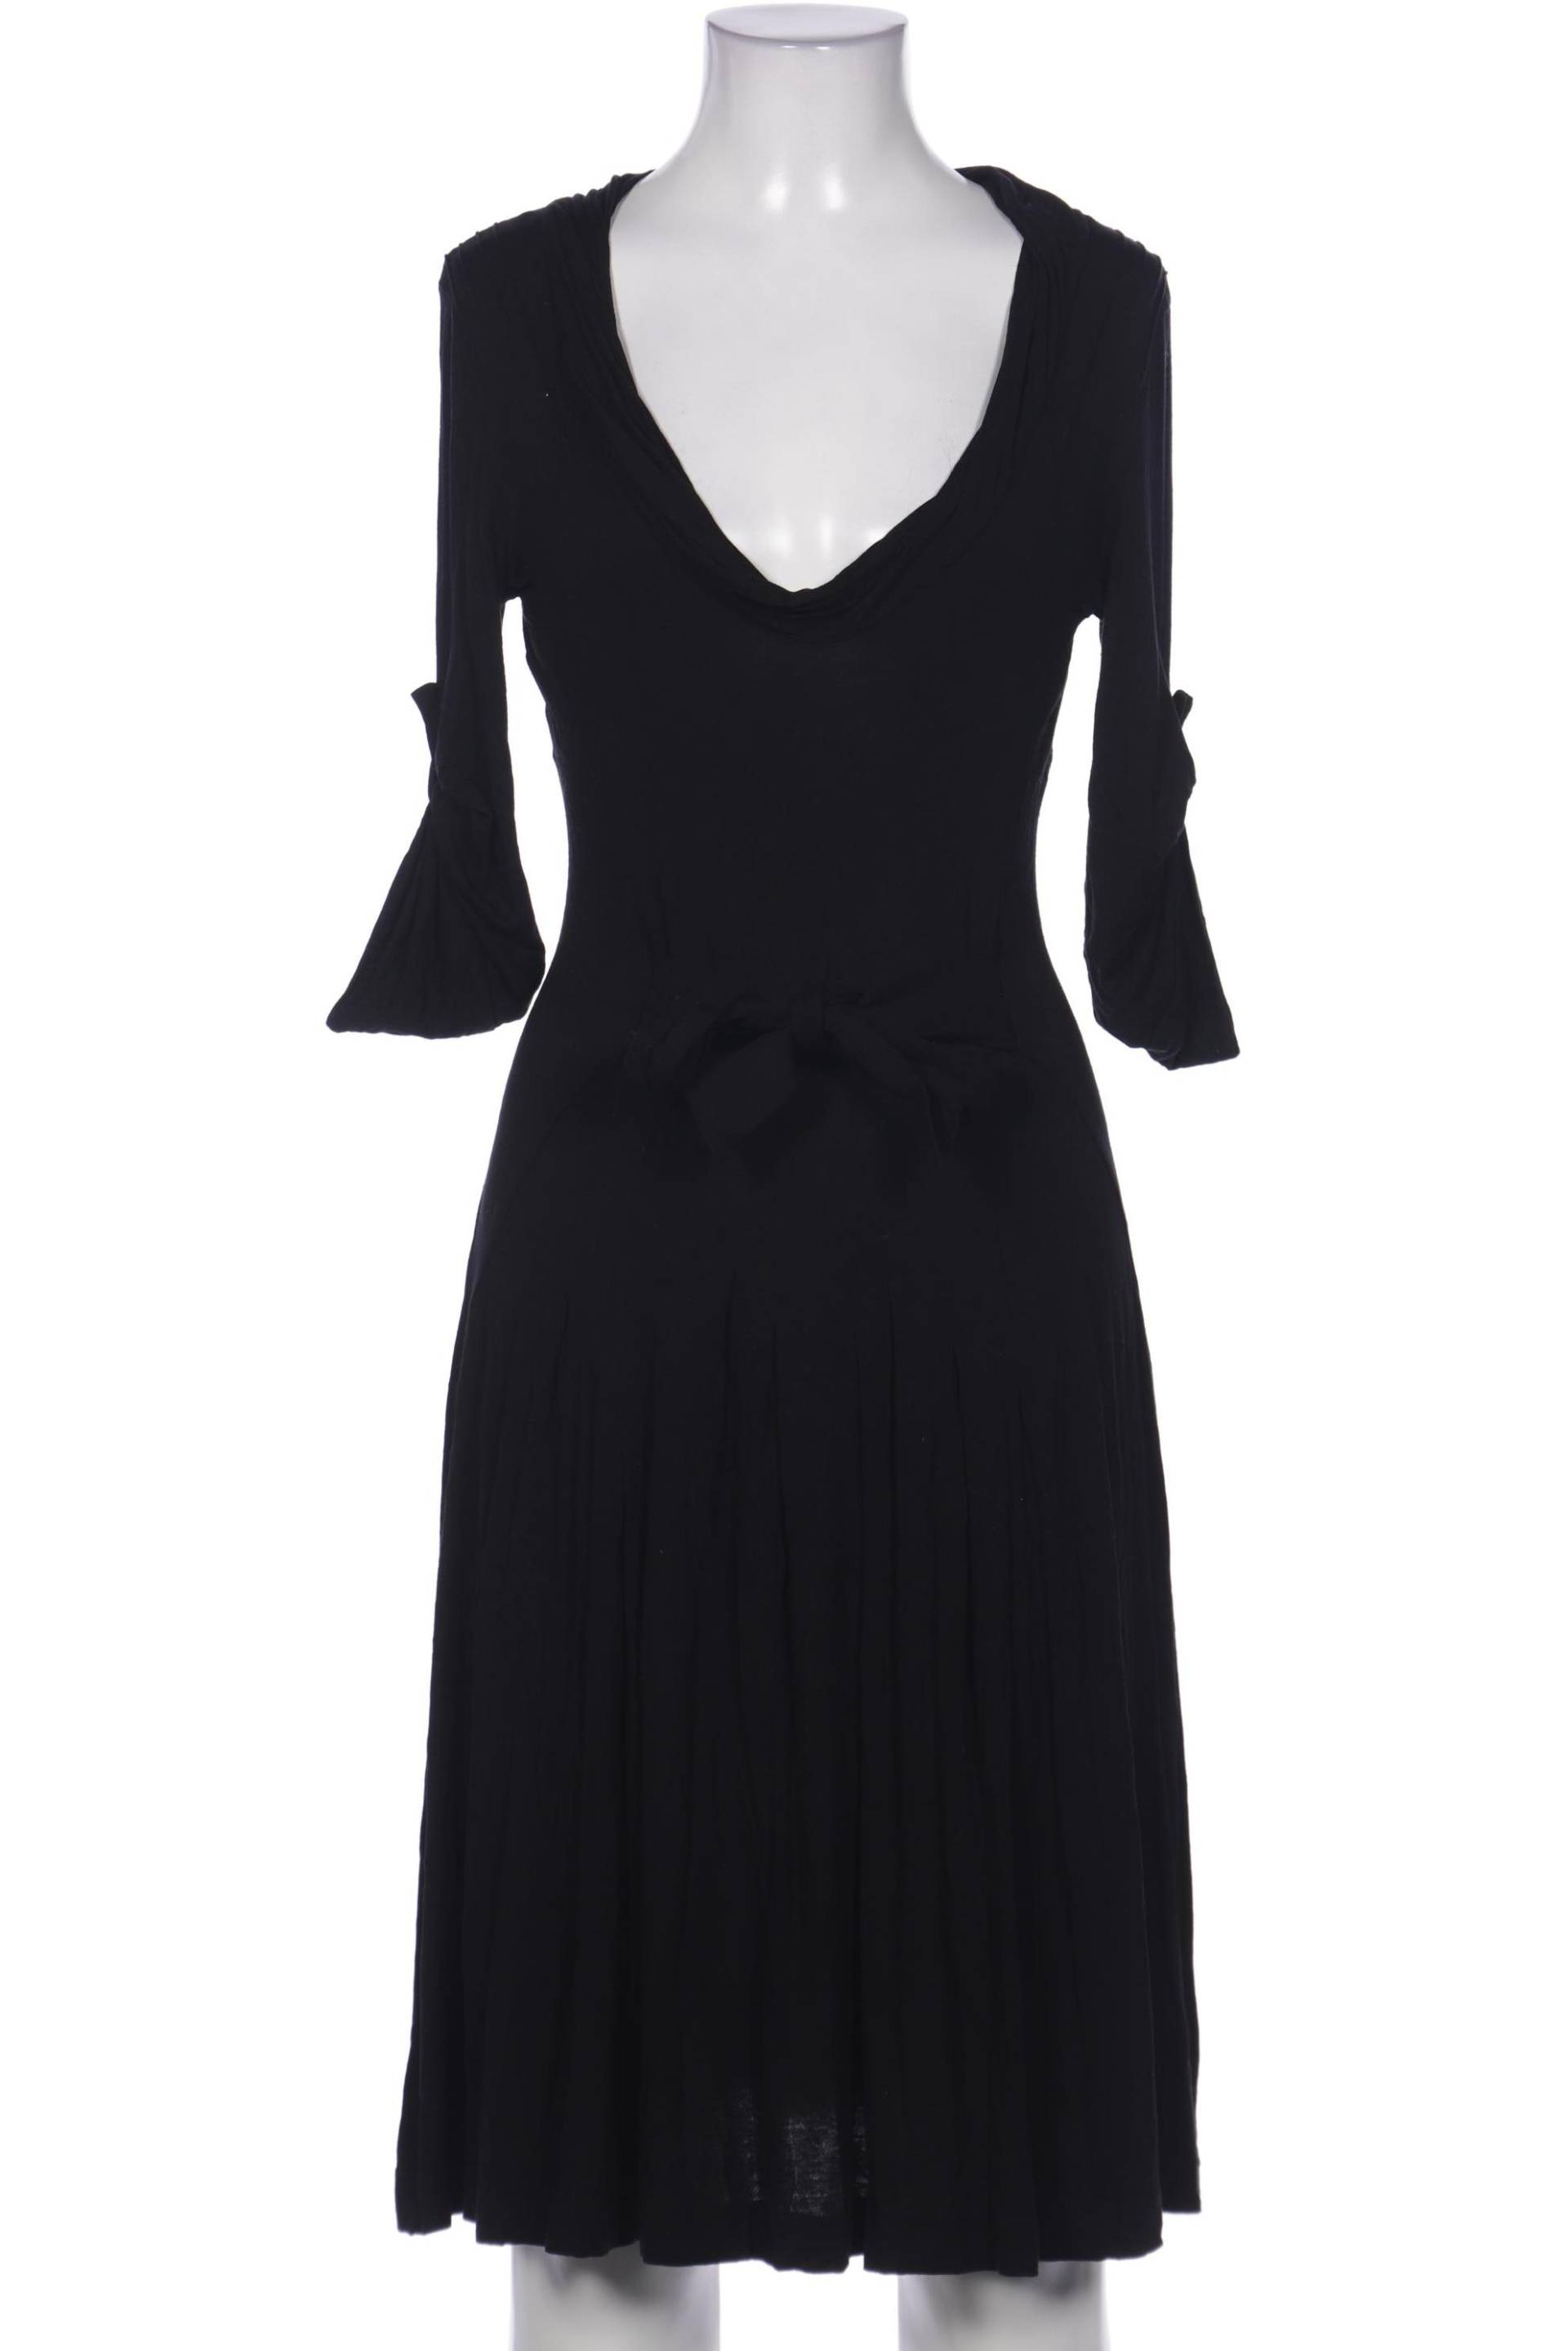 Toni Gard Damen Kleid, schwarz, Gr. 34 von TONI GARD